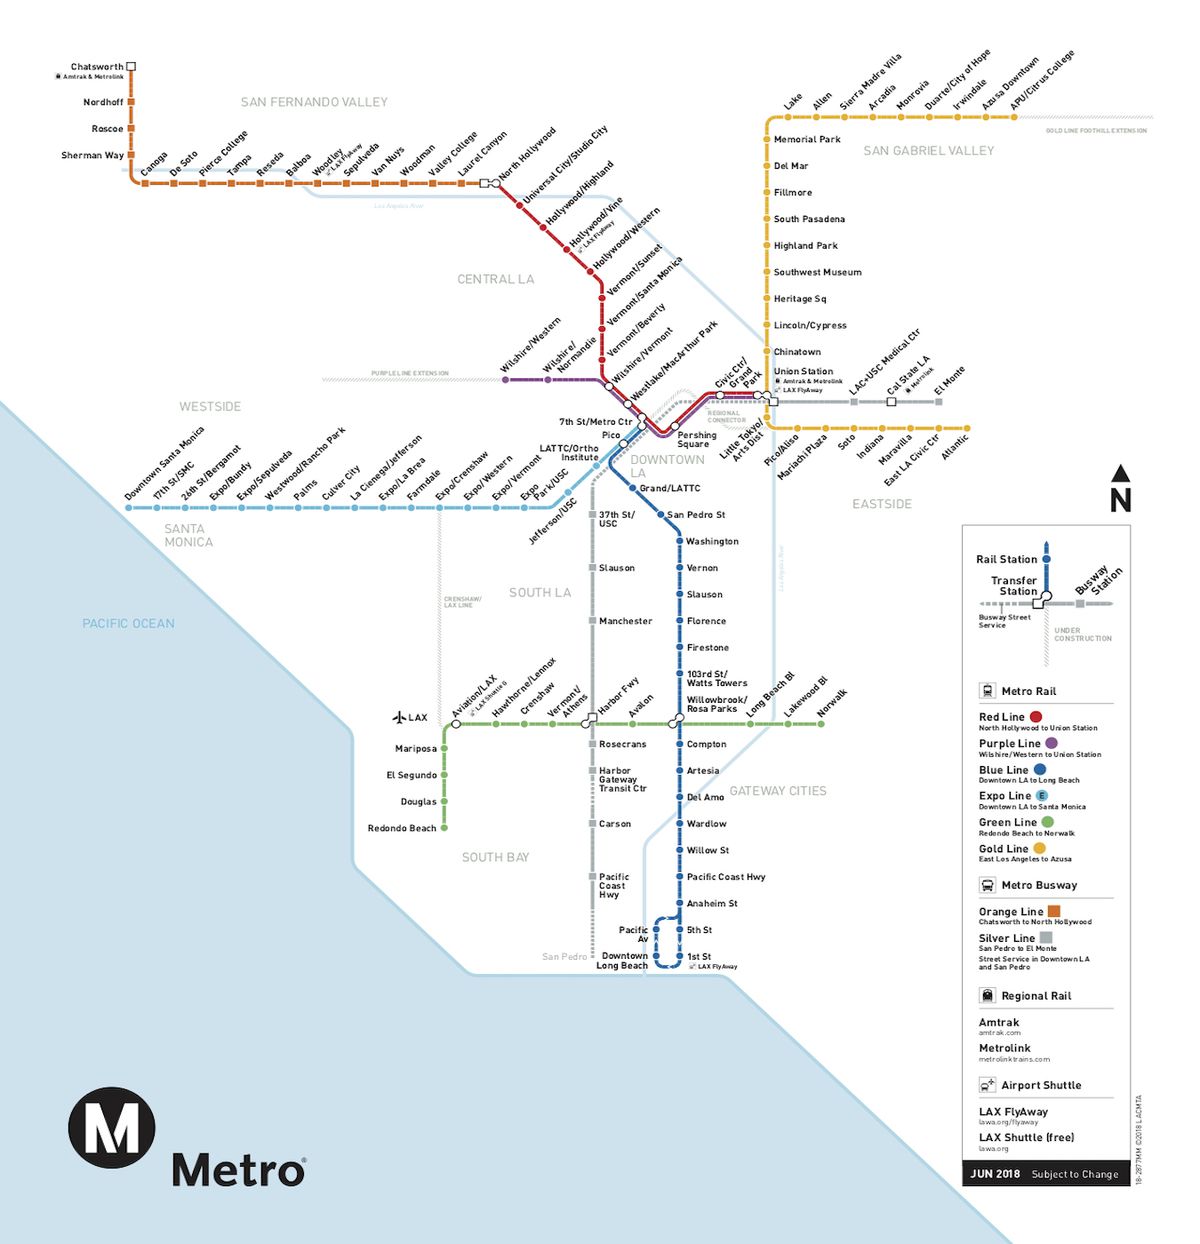 Map of LA's public transit. It is quite scarce